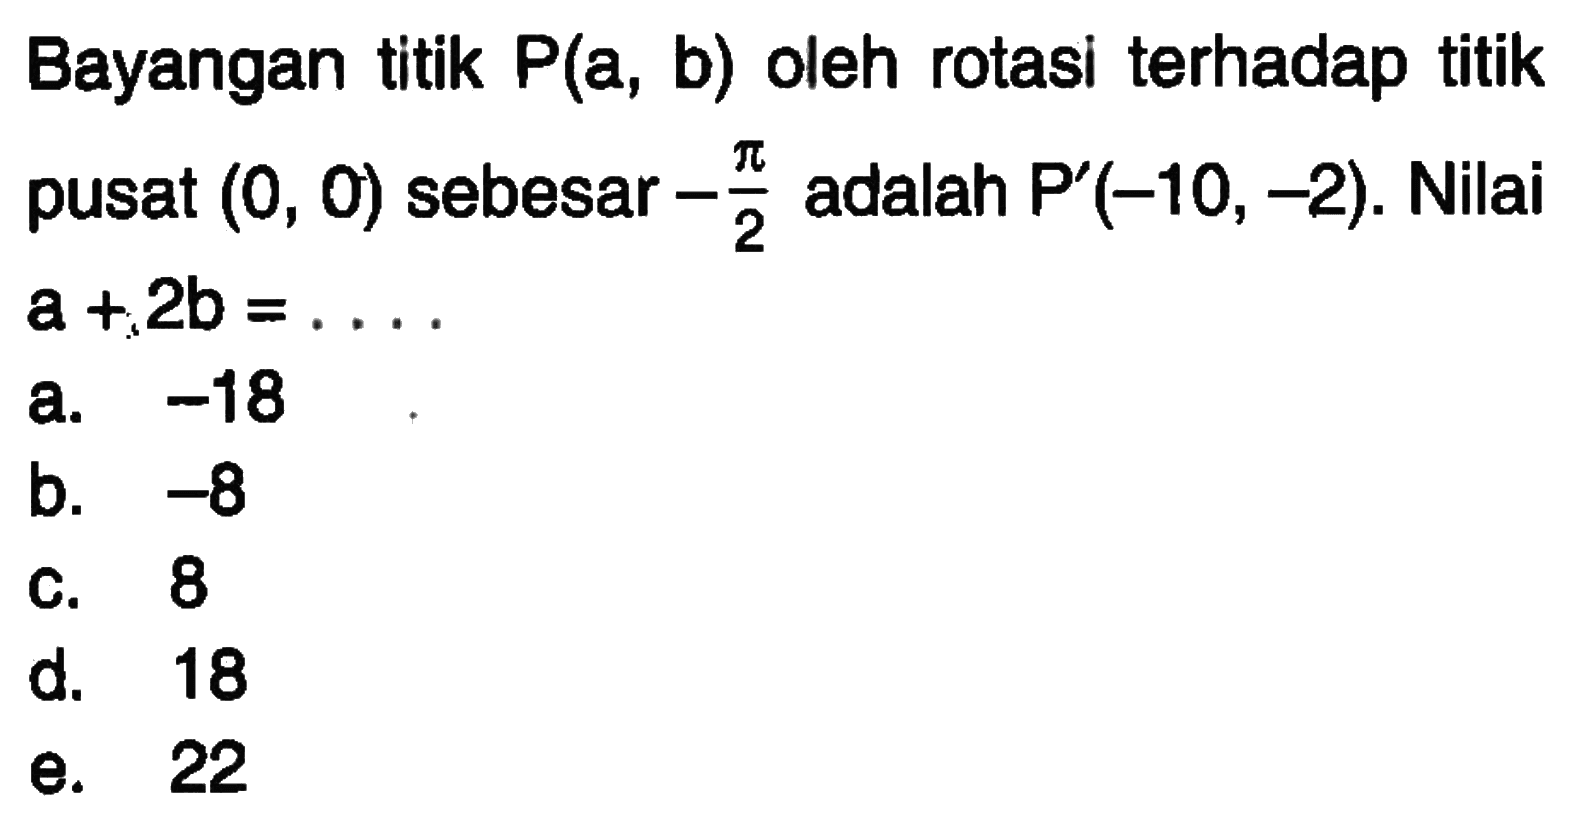 Bayangan titik P(a, b) oleh rotasi terhadap titik pusat (0, 0) sebesar -pi/2 adalah P' (-10, -2). Nilai a+2b = ....